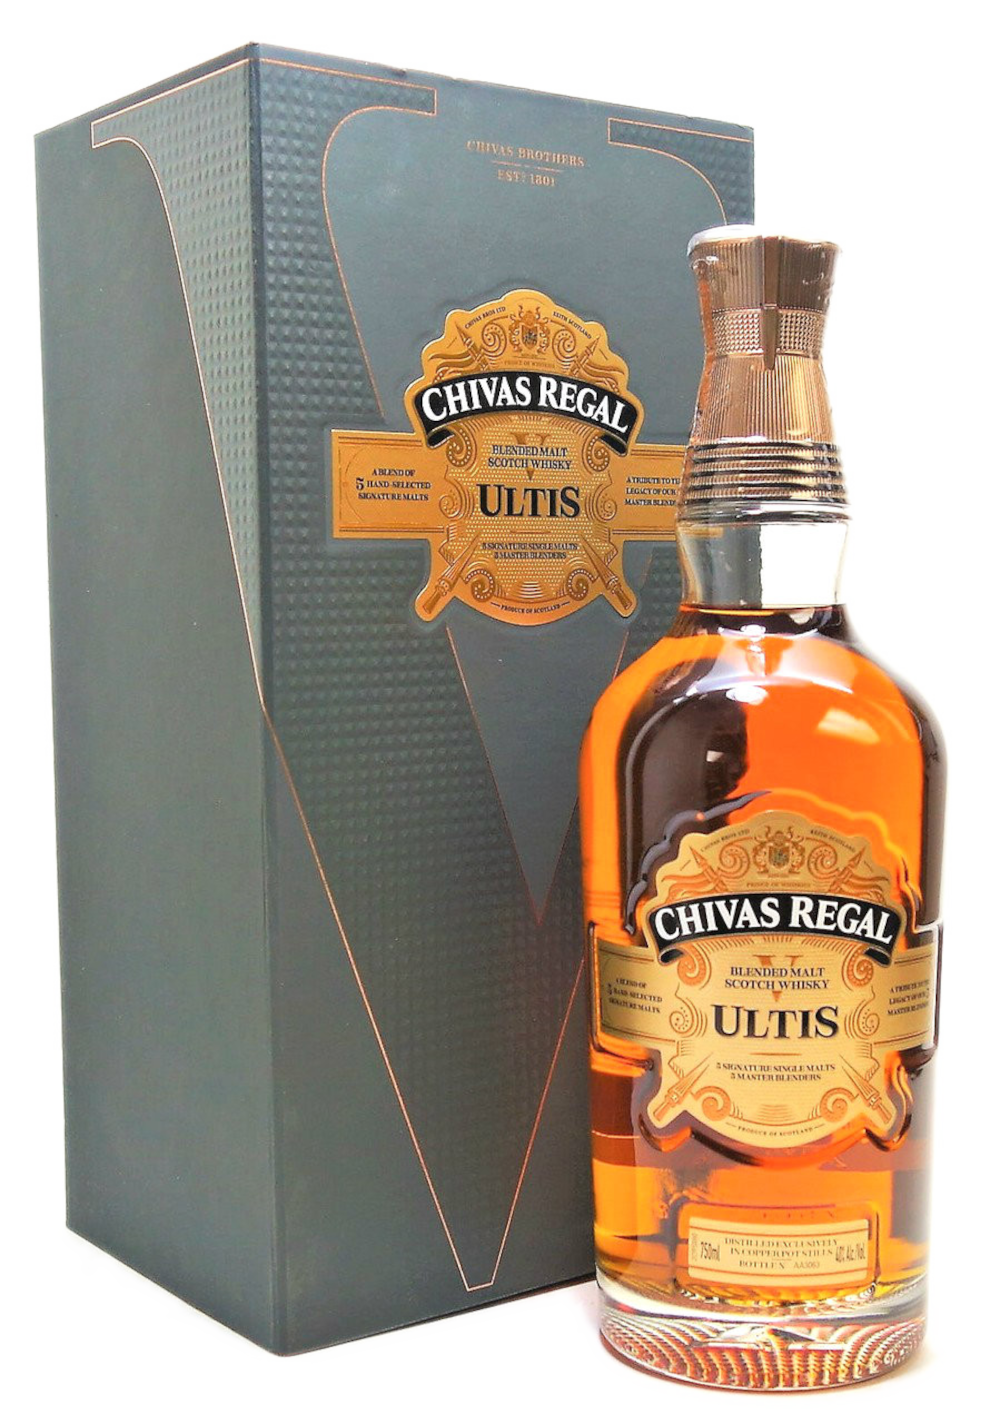 Chivas Regal Ultis Blended Whisky